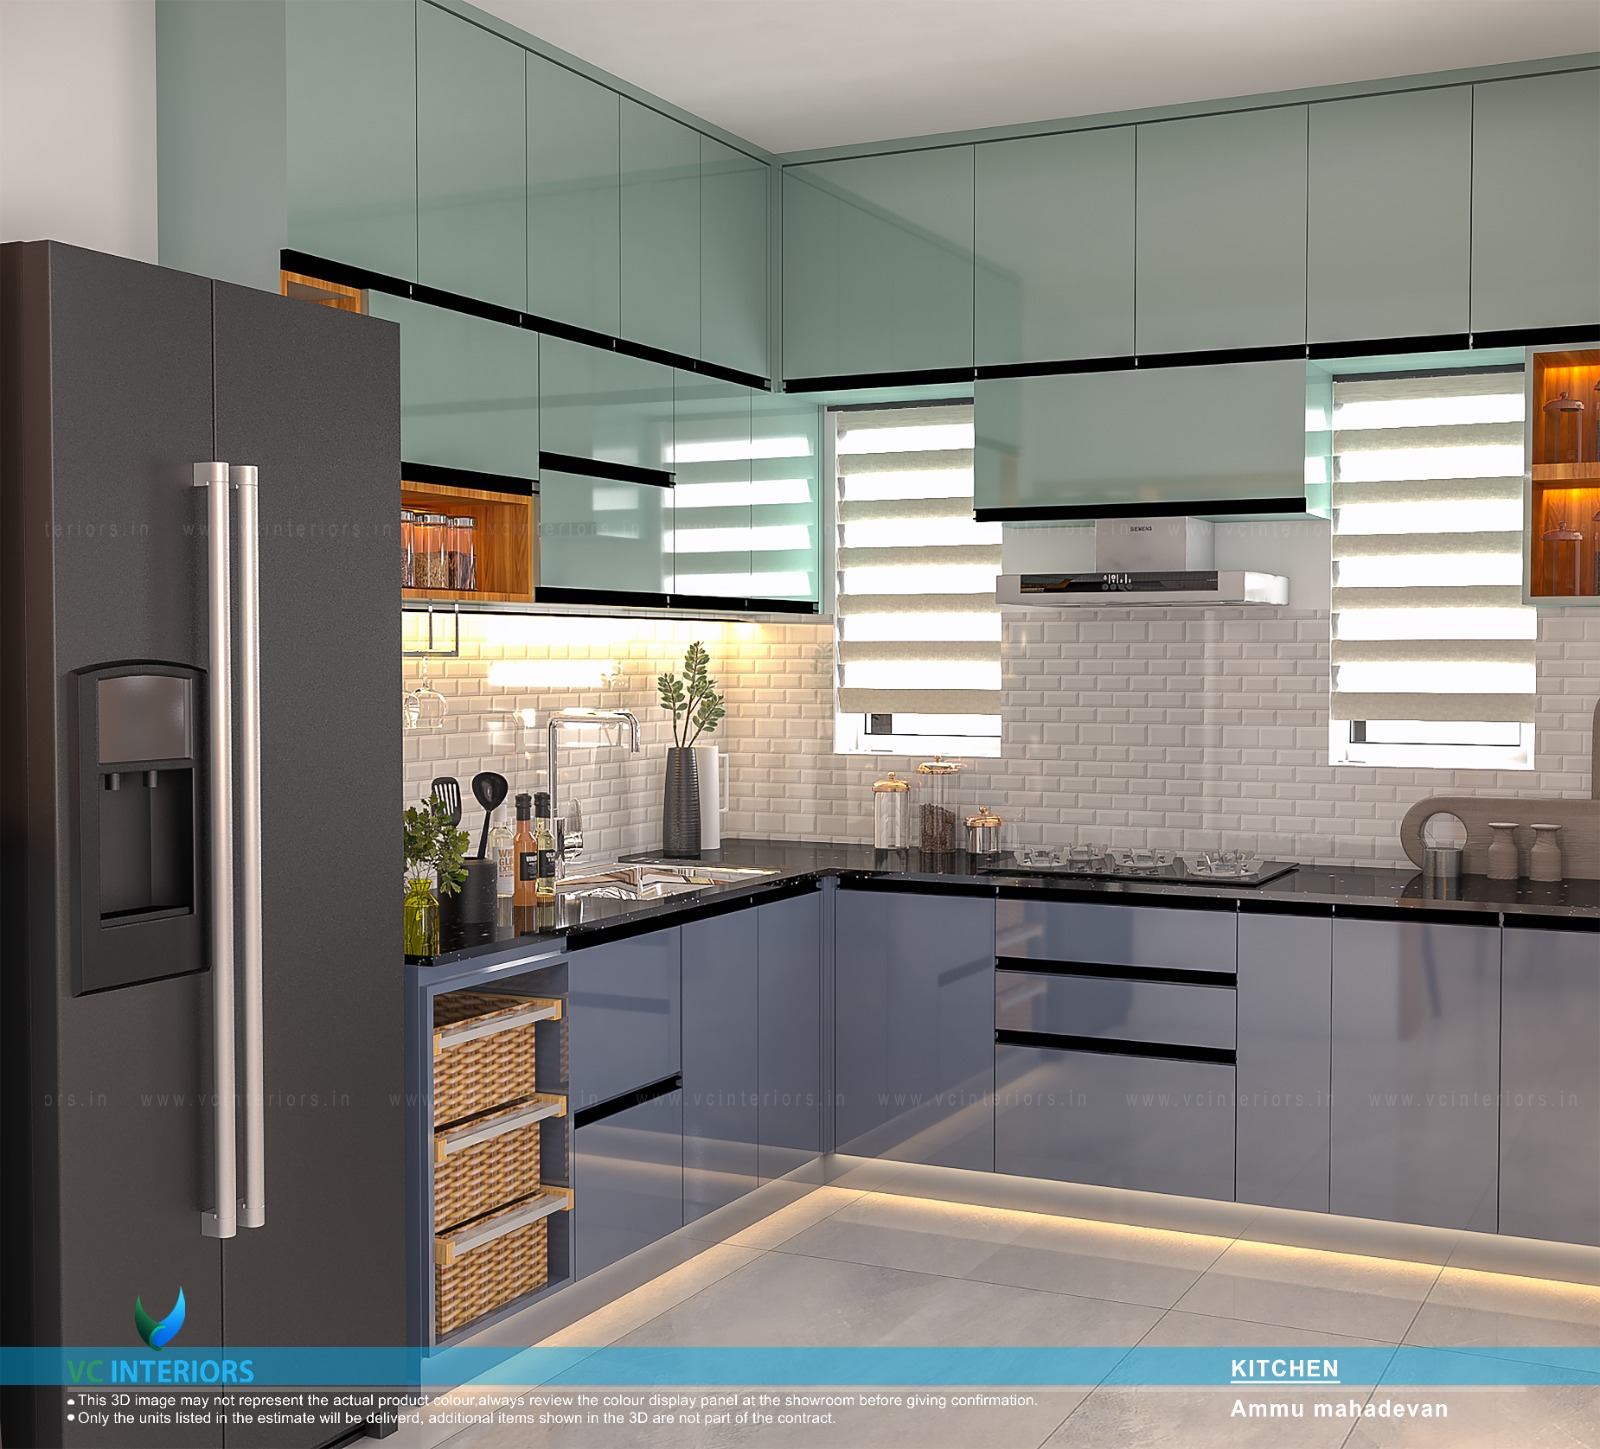 Modular Kitchen interior design